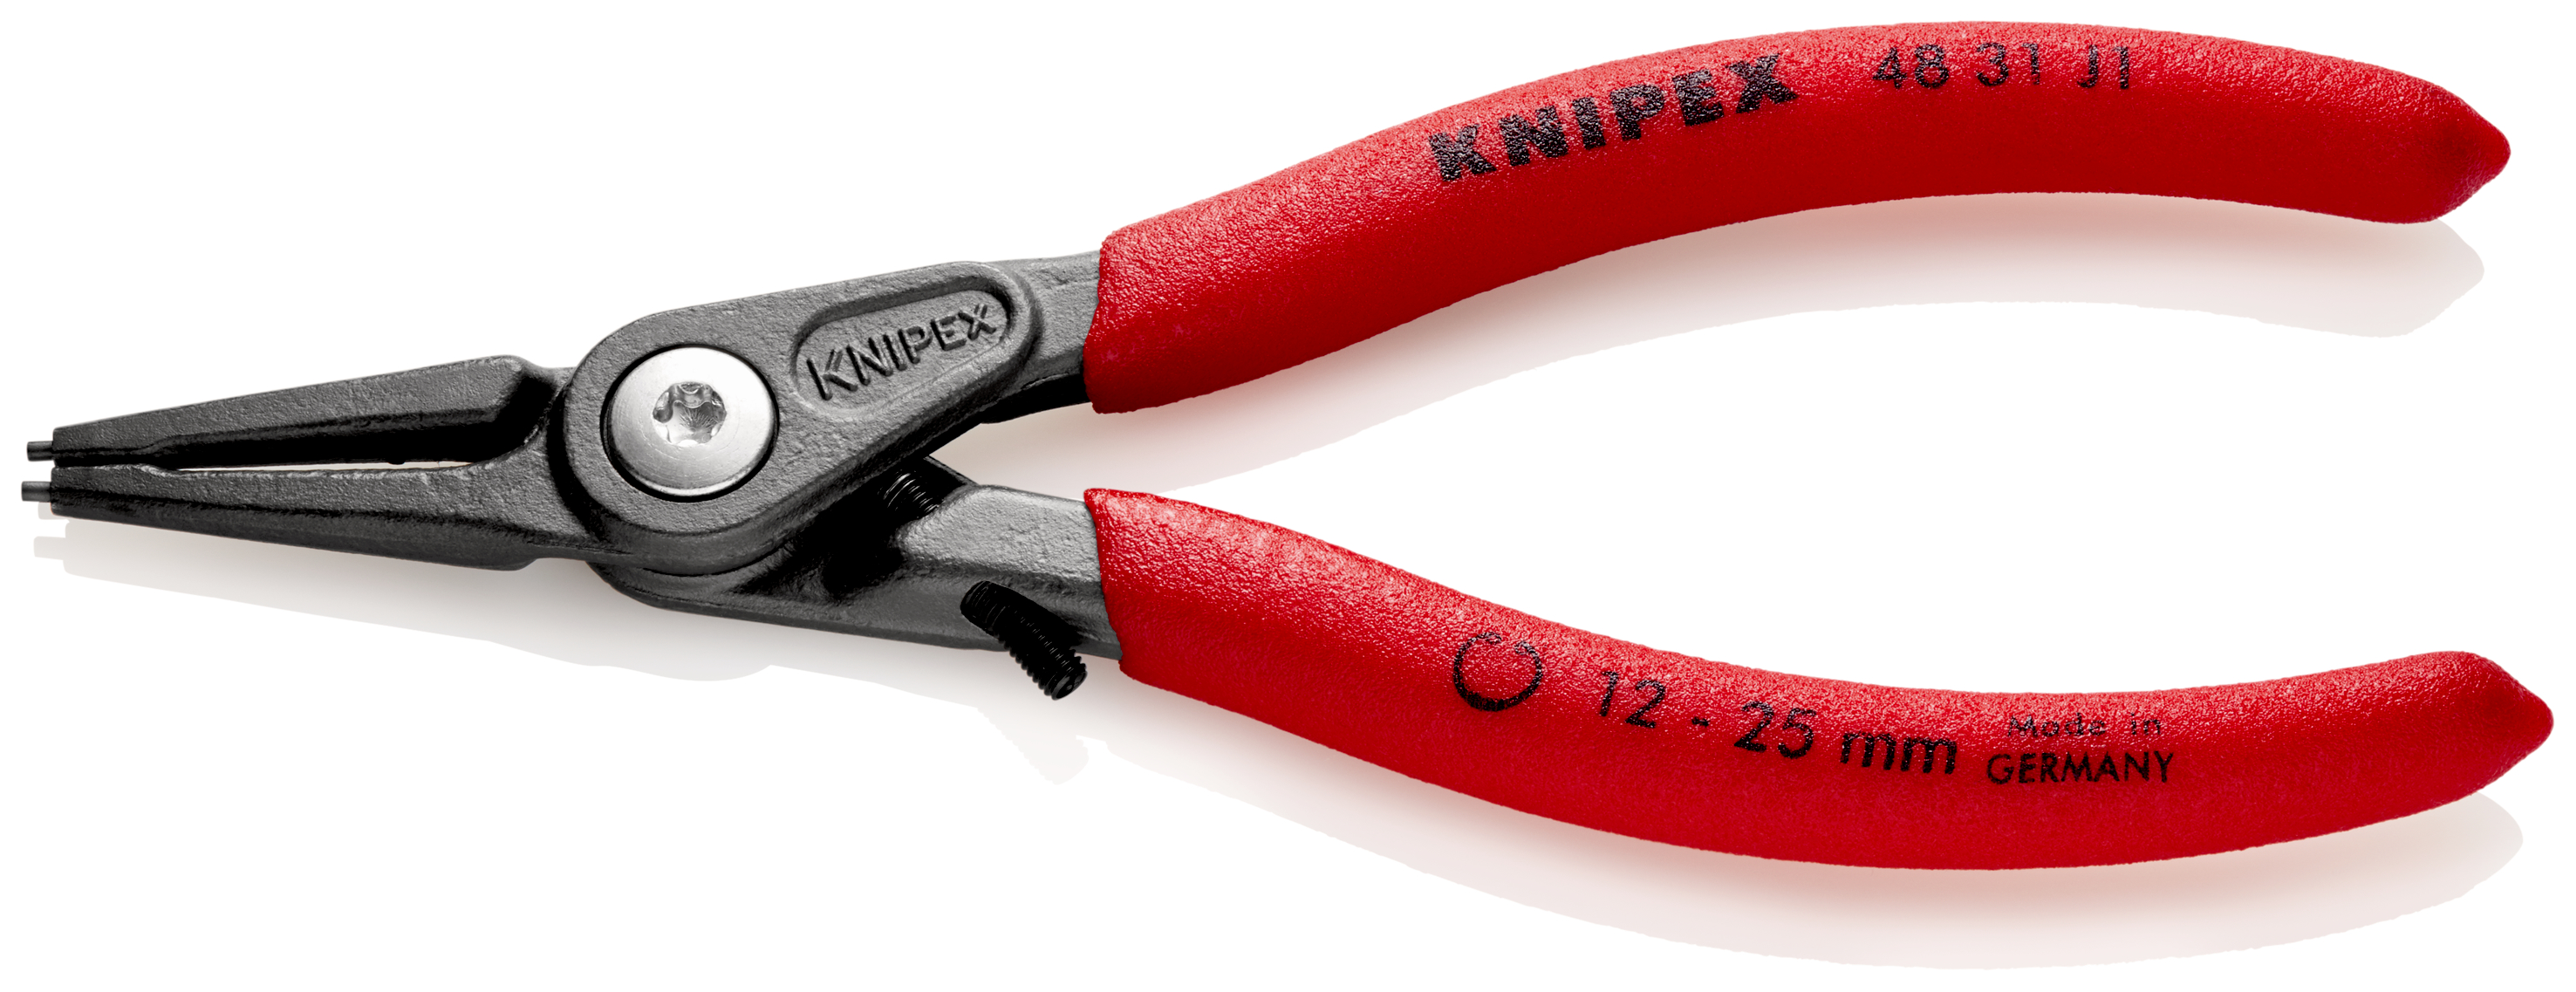 Knipex 4831J1 Cleste pentru inele de siguranță de interior cu protecţie la supraîntindere, lungime 140 mm